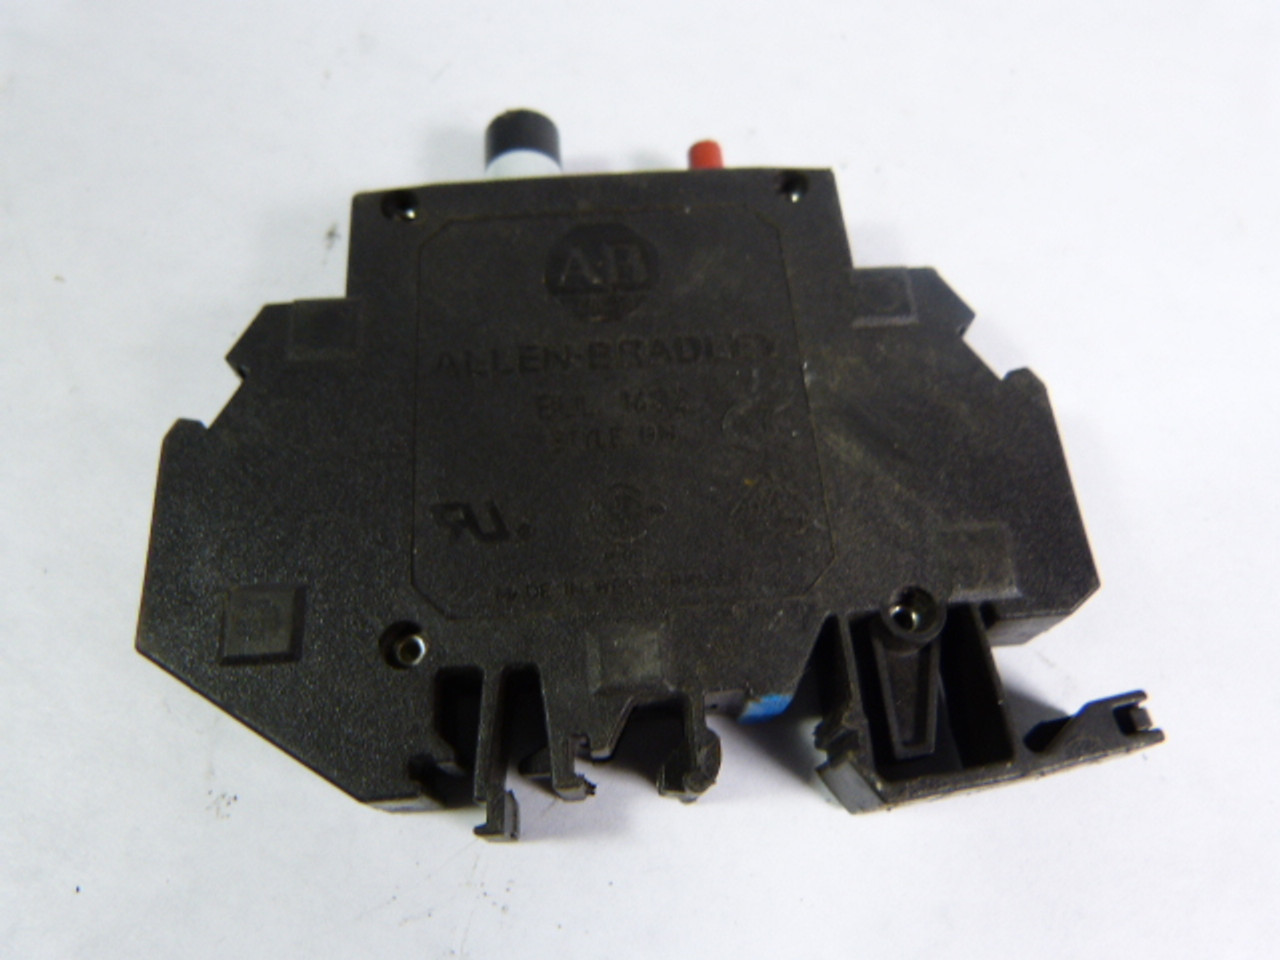 Allen-Bradley 1492-GH012 Miniature Circuit Breaker 1.2Amp 250V USED